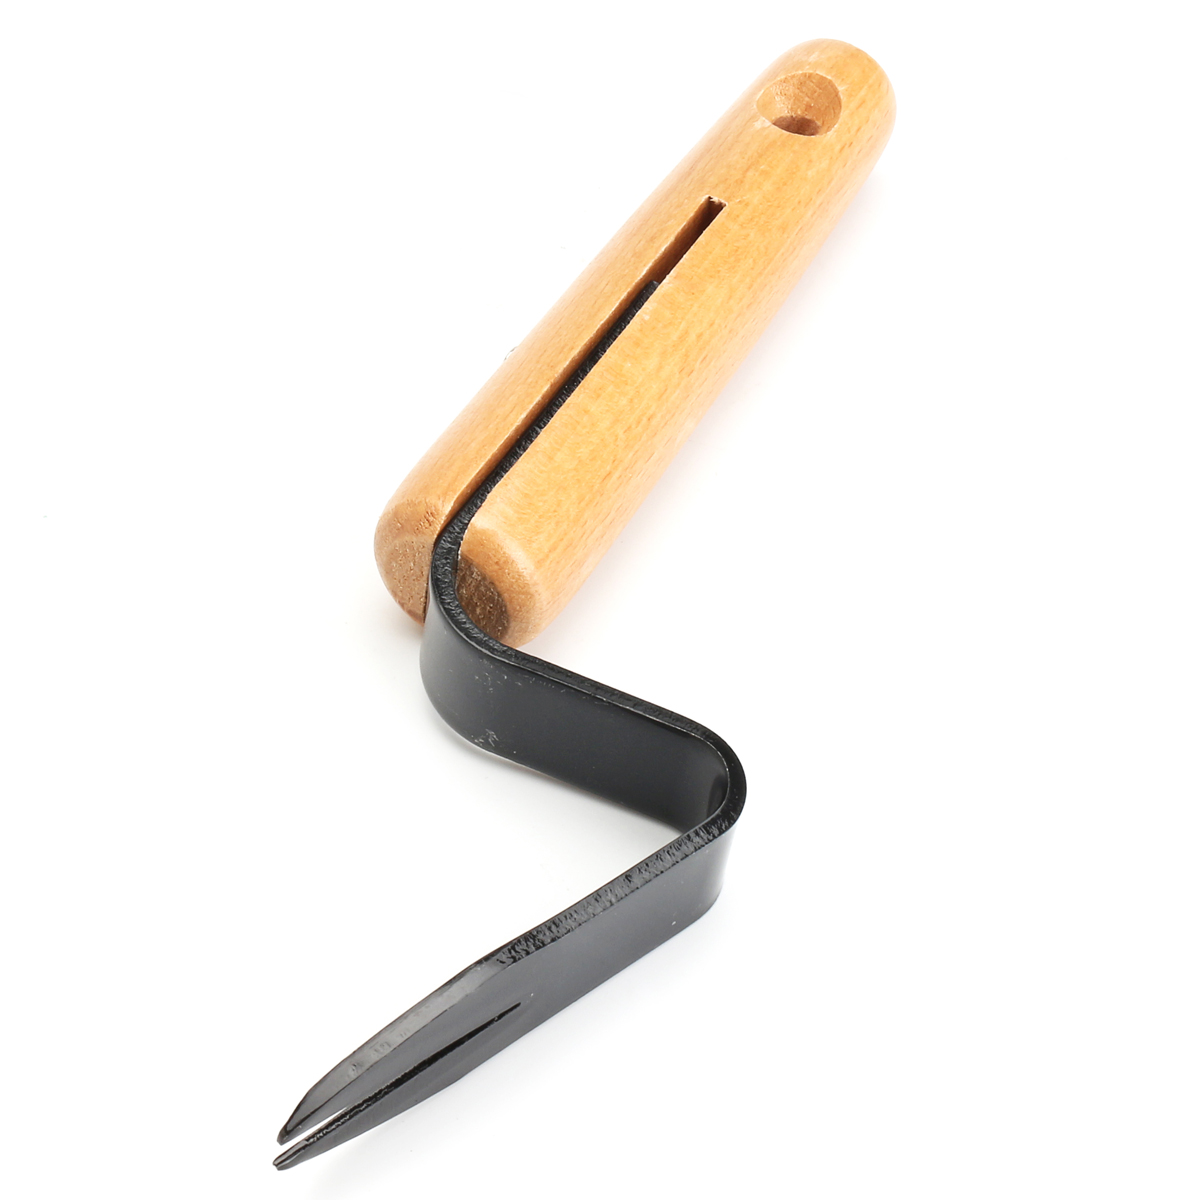 20cm-Forked-Head-Hand-Weeder-Puller-Patio-wood-handle-Garden-Remove-Weeds-1233517-5